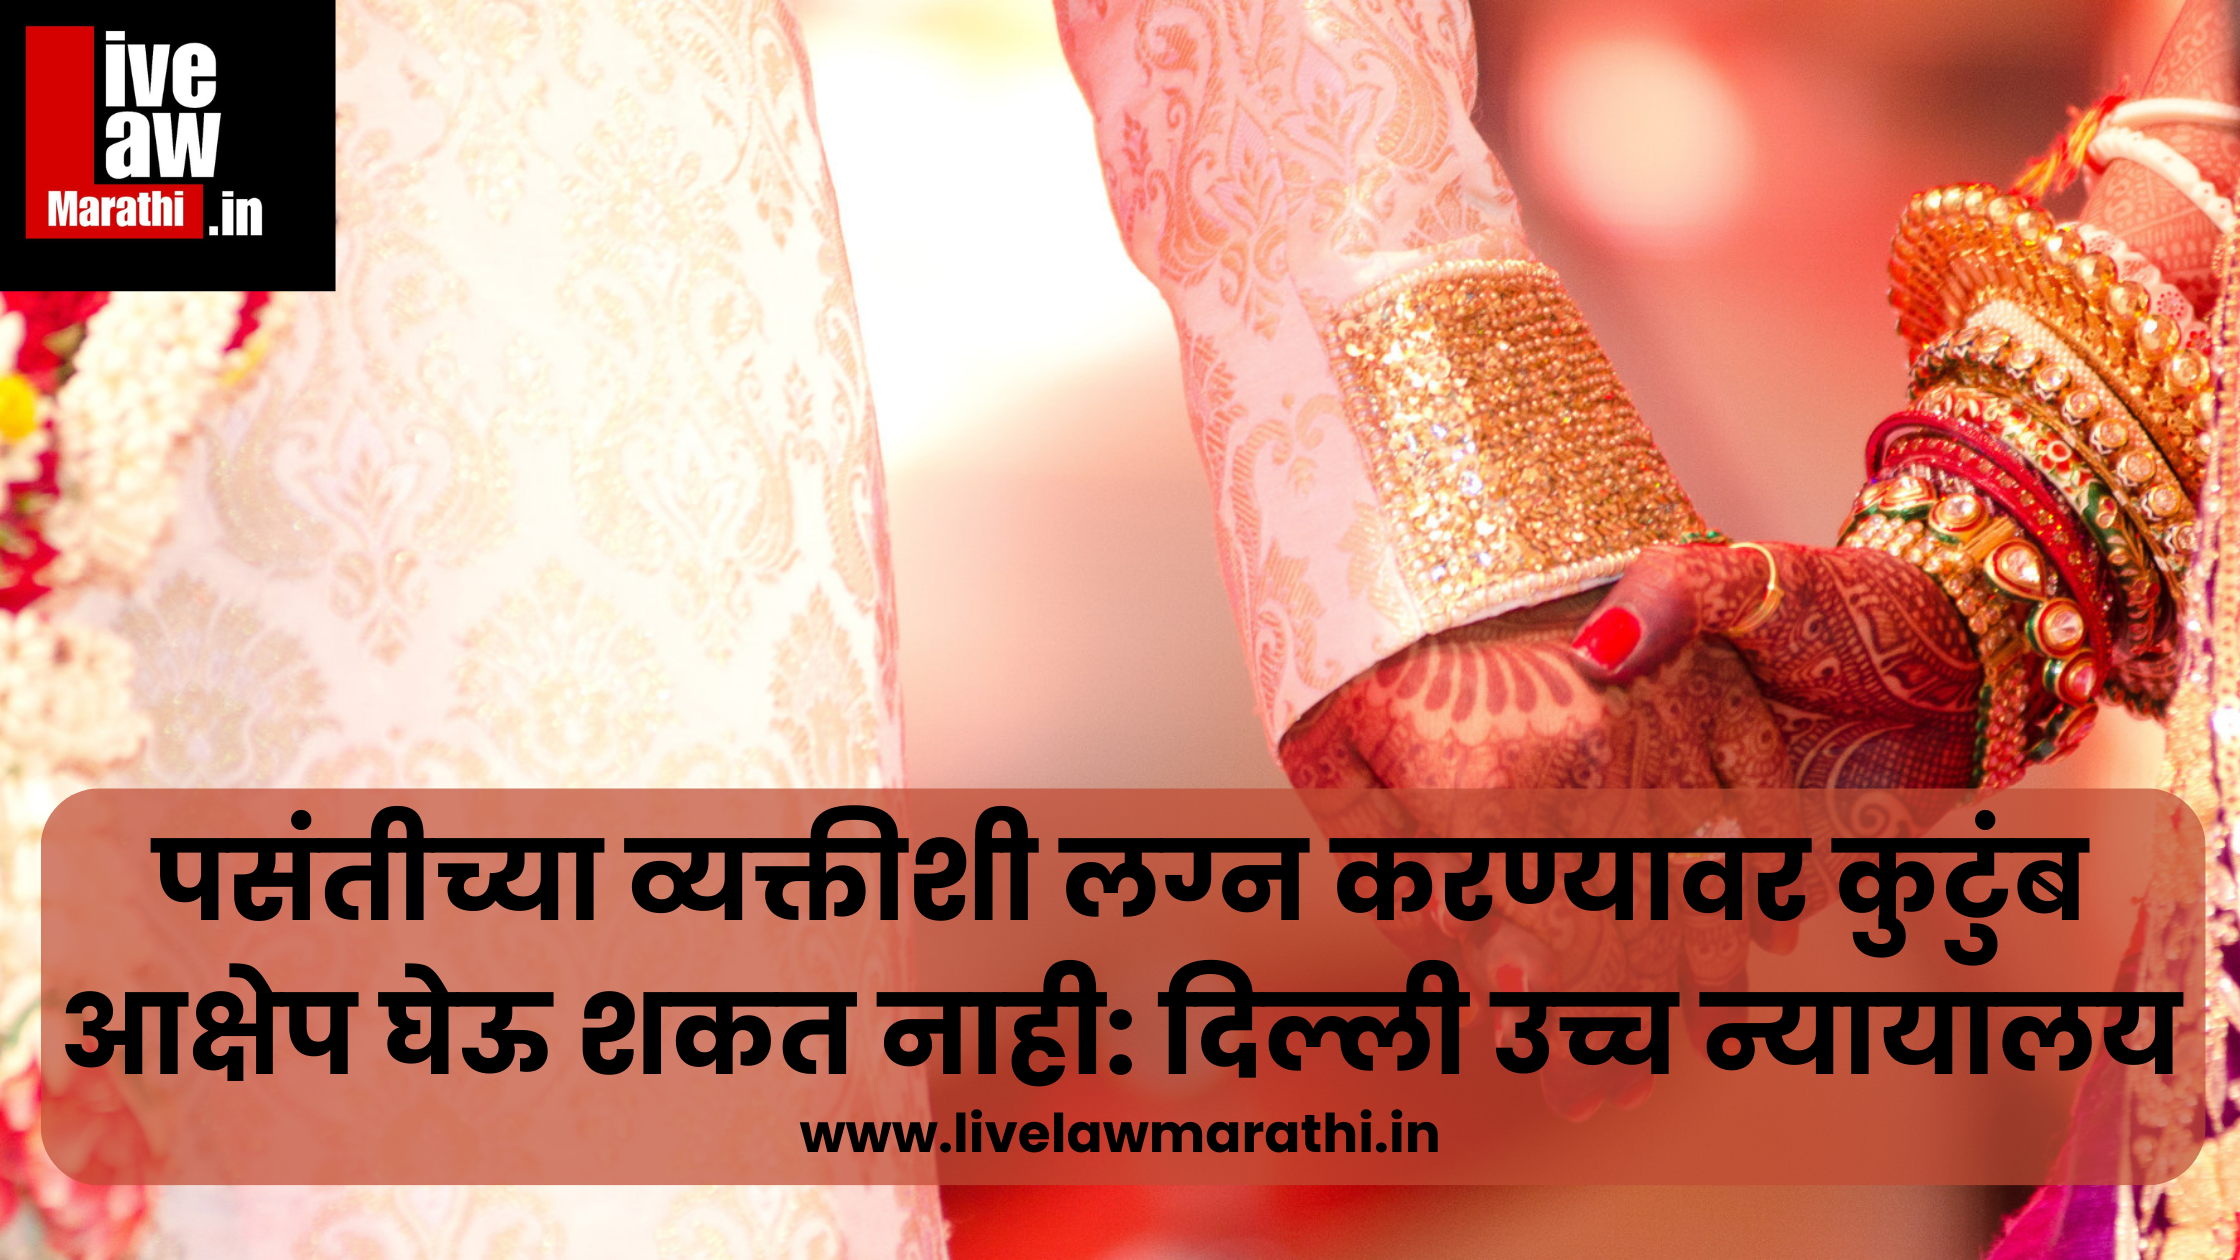 पसंतीच्या व्यक्तीशी लग्न करण्यावर कुटुंब आक्षेप घेऊ शकत नाही: दिल्ली उच्च न्यायालय